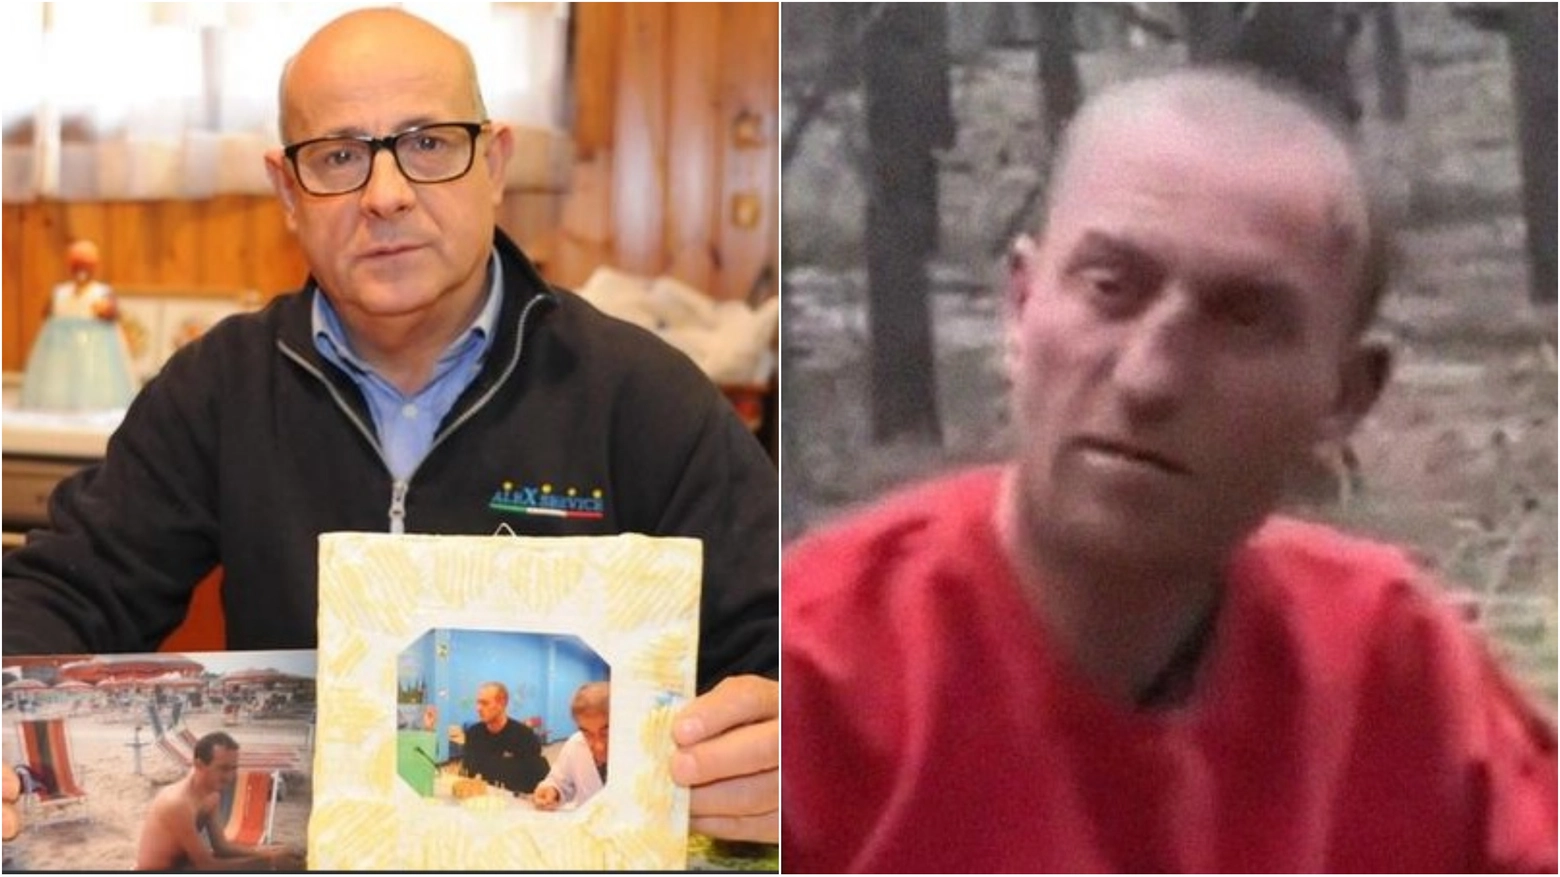 Francesco Potenzoni e la persona ritratta nel video che ha riacceso le speranze di ritrovare il figlio Daniele